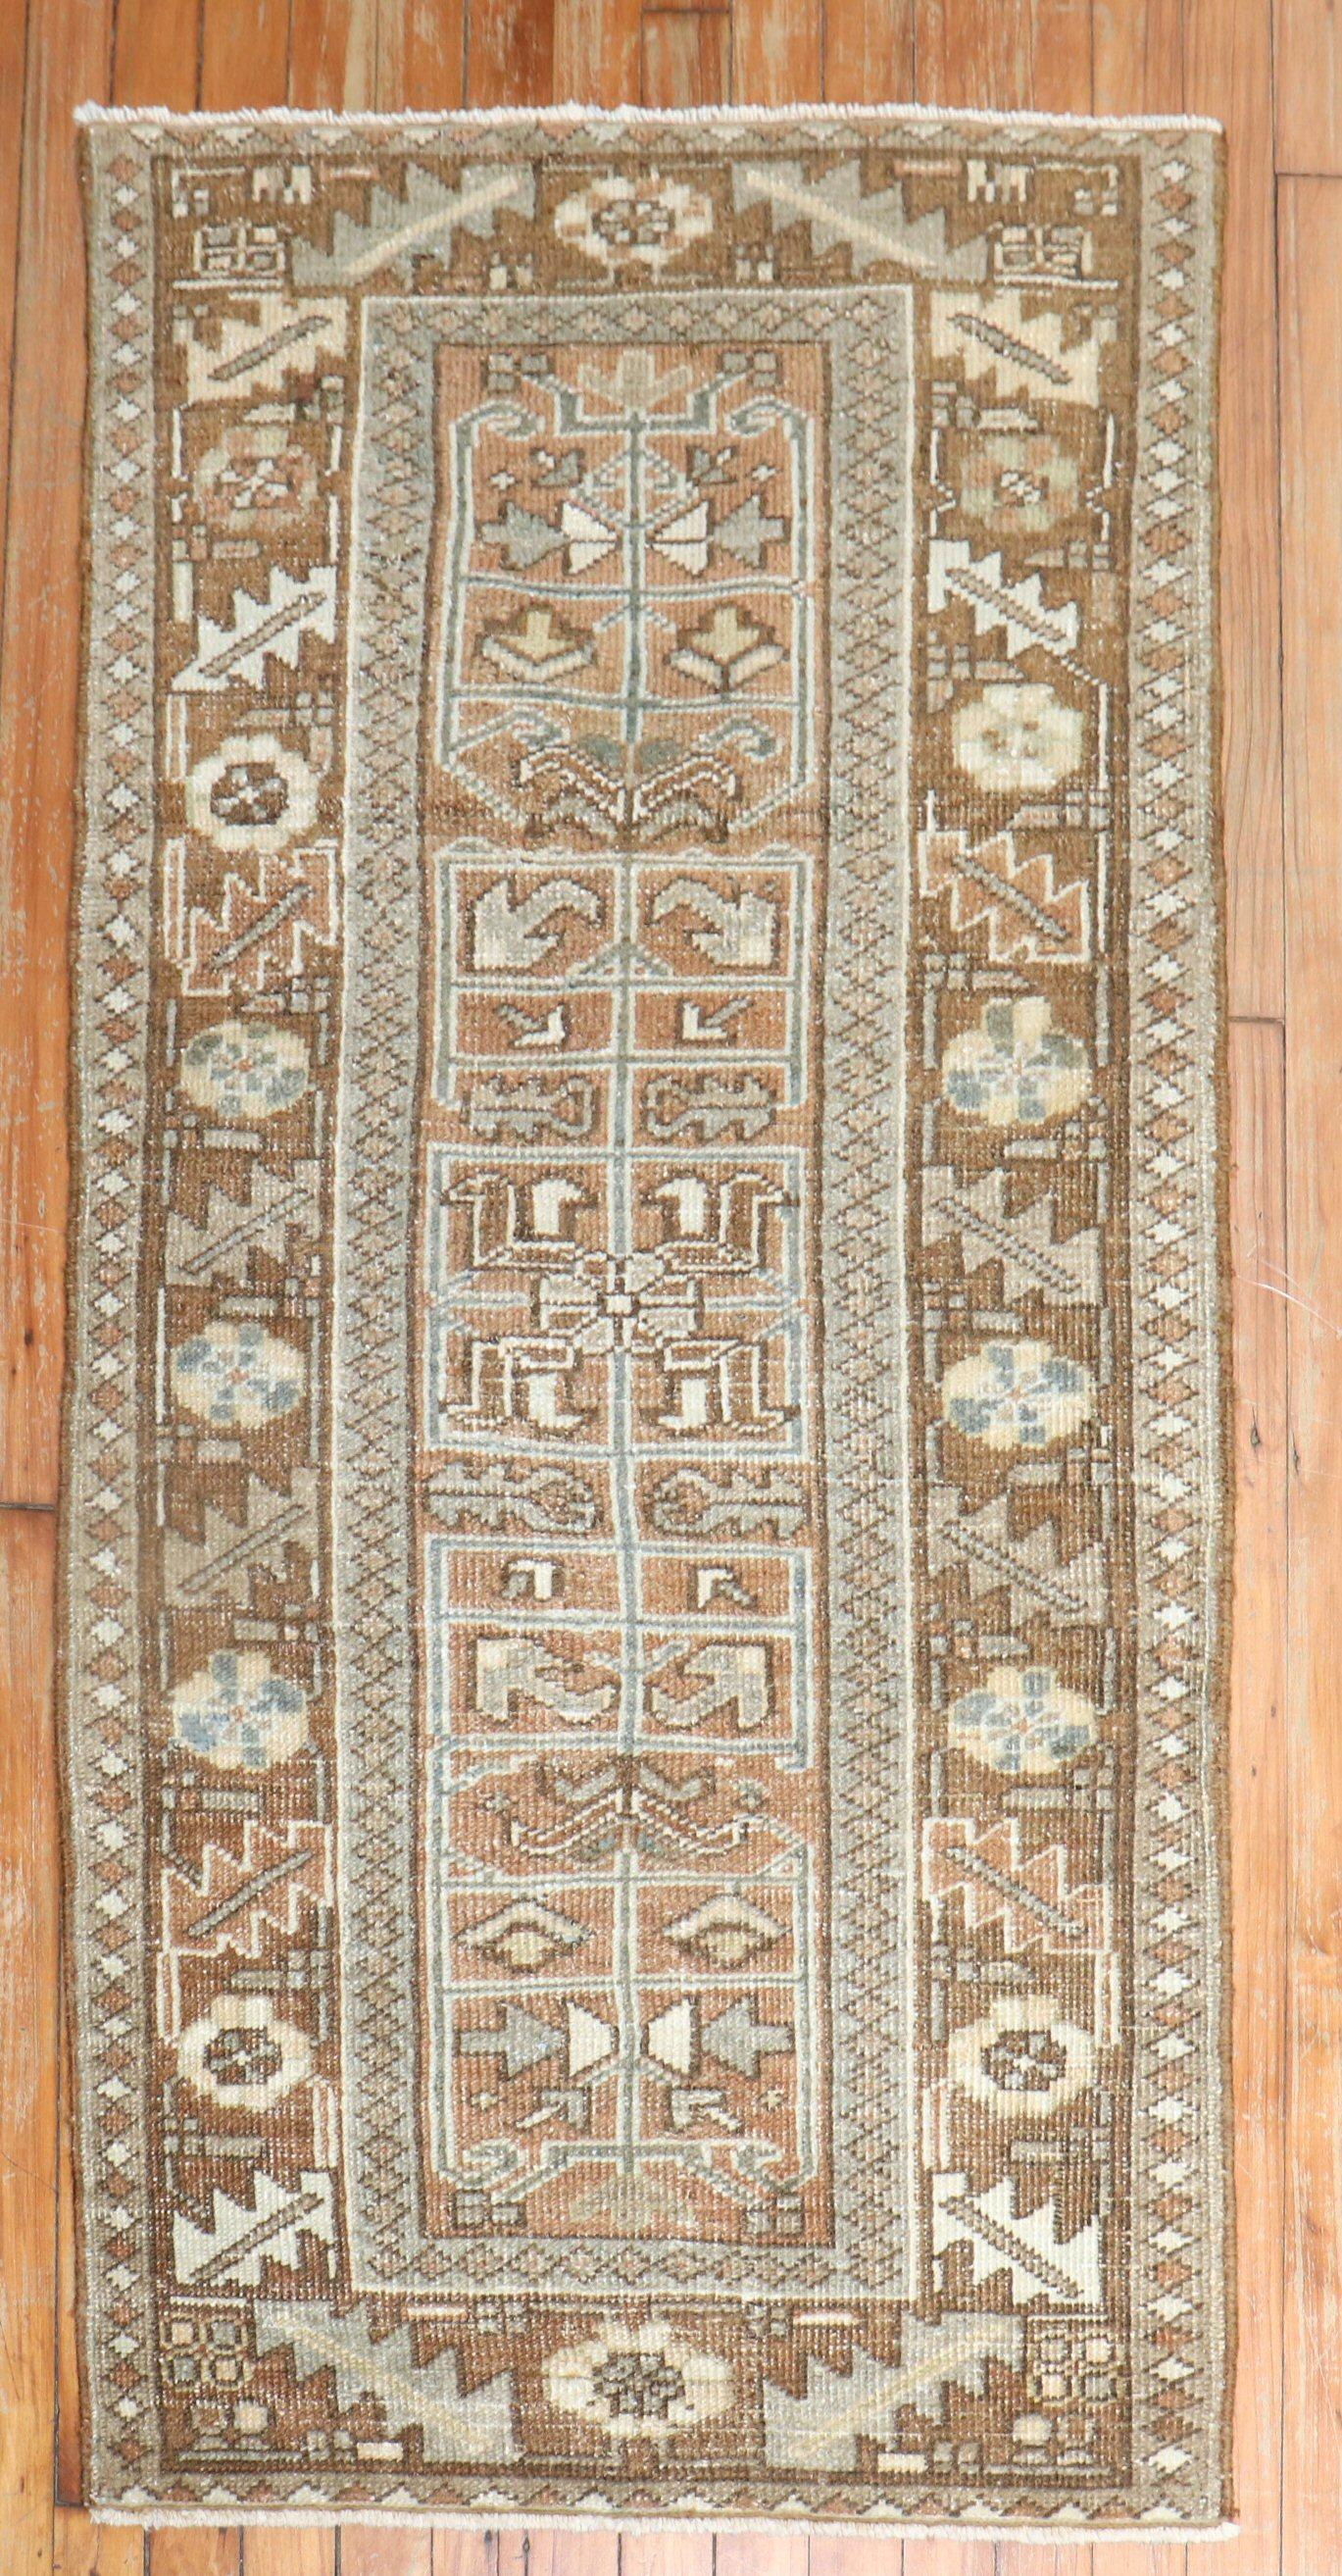 Persischer Heriz-Teppich in Streugröße aus den 1930er Jahren in überwiegendem Braun

2'5'' x 4'10''

